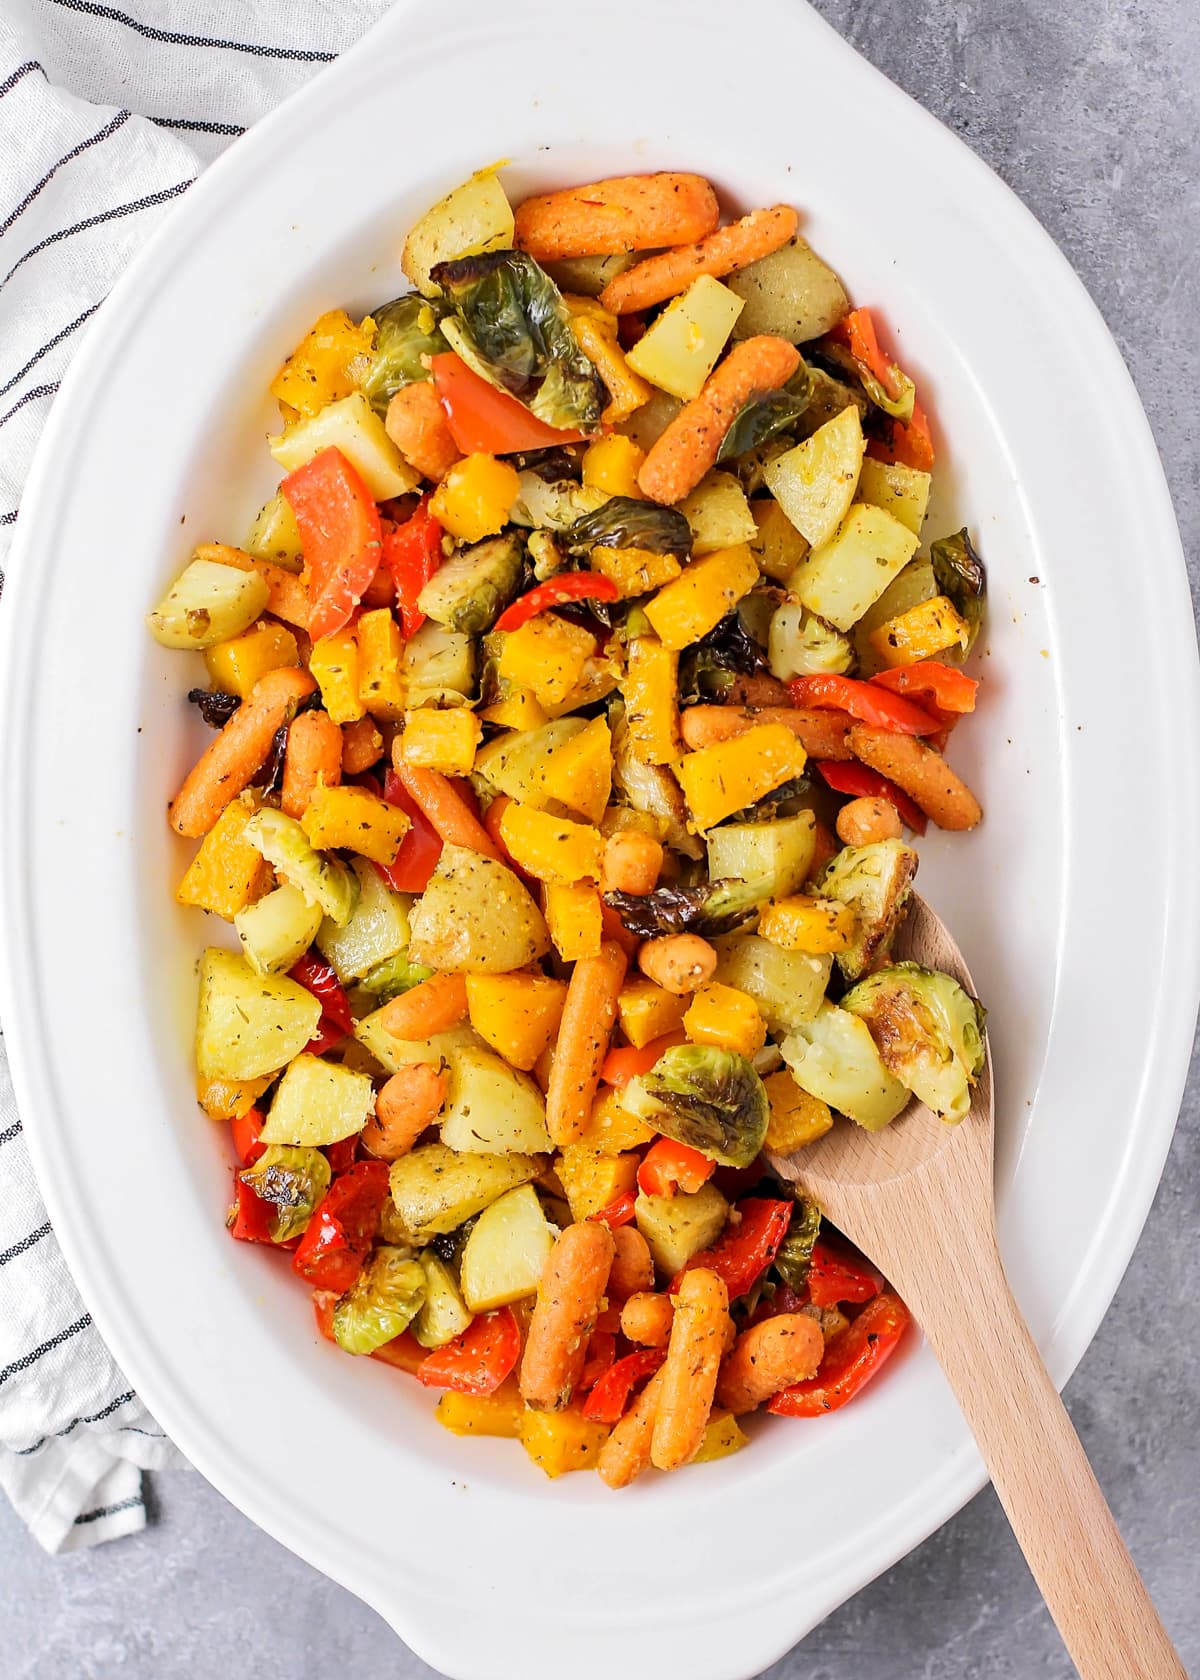 把烤好的蔬菜放在碗里搅拌在一起。